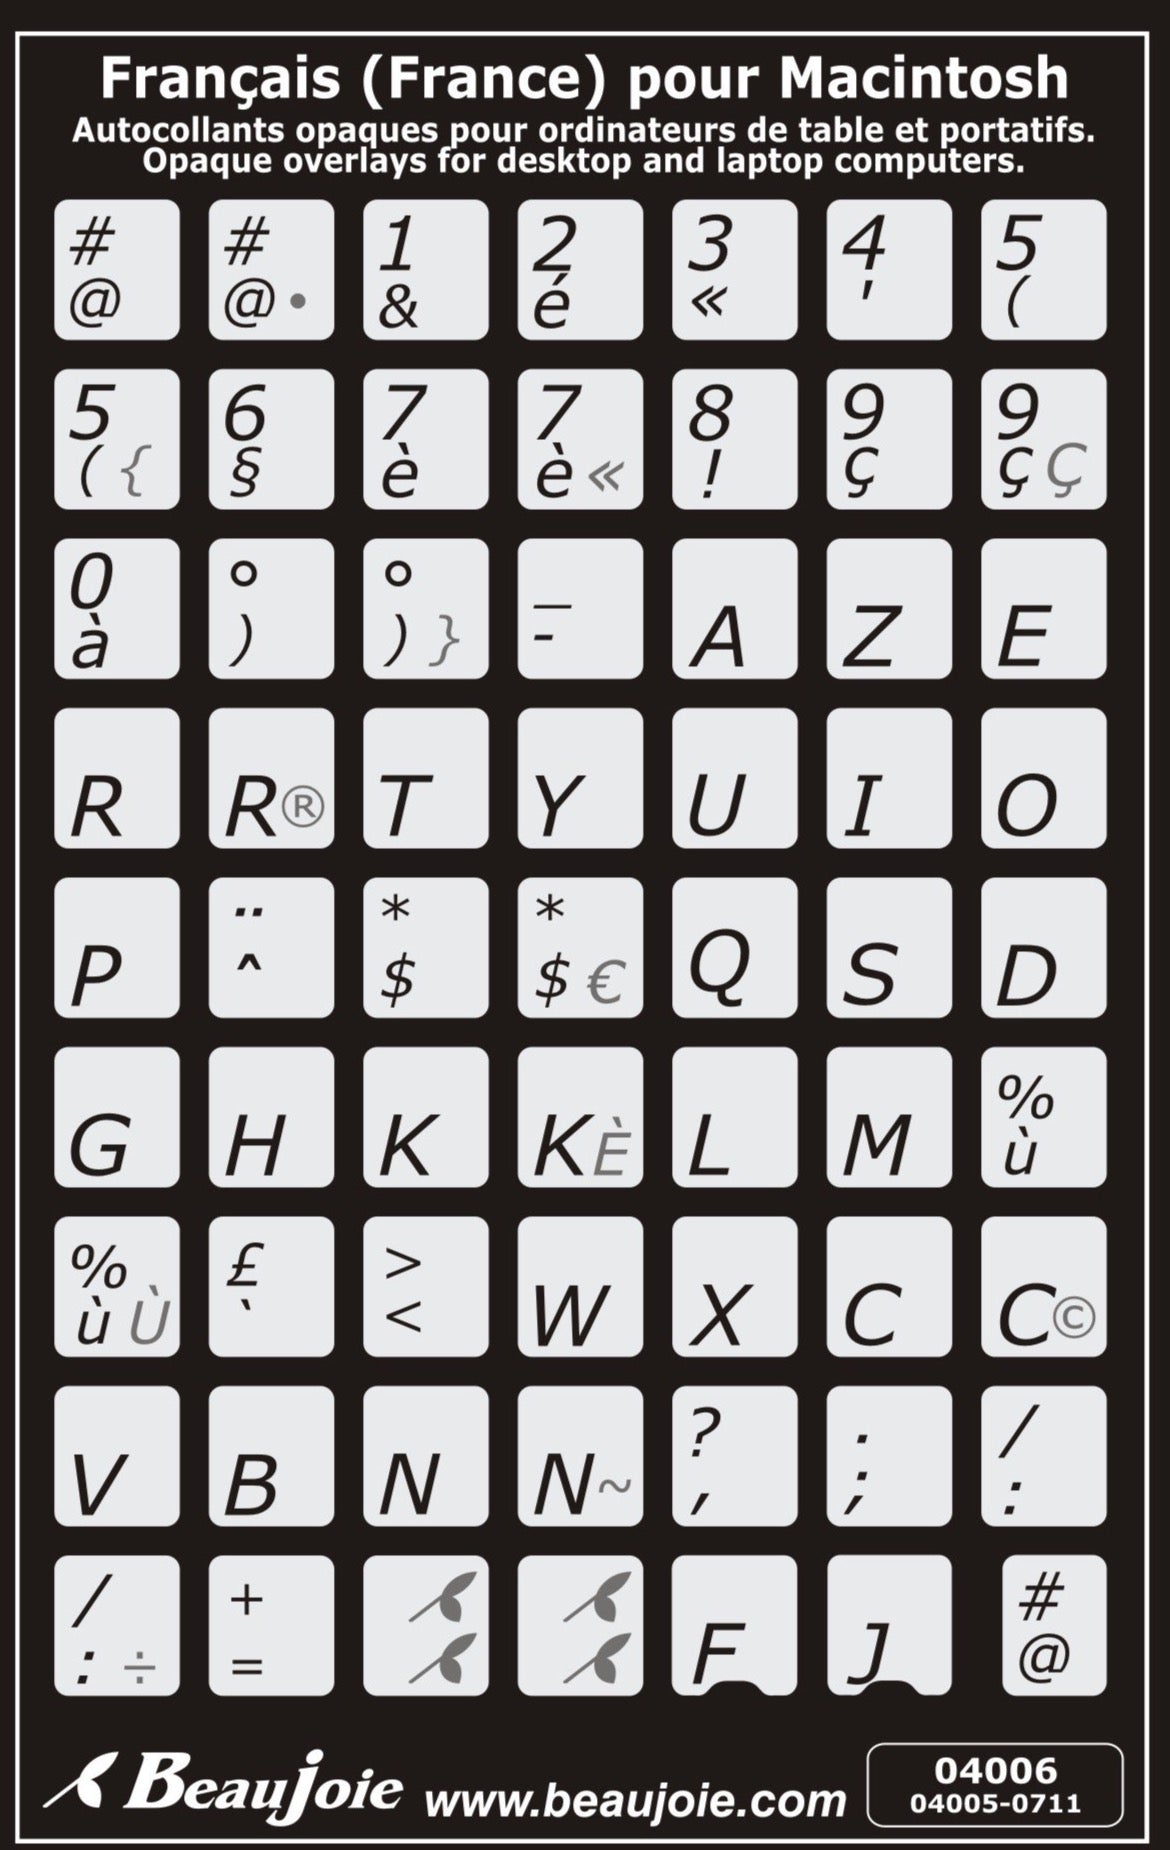 Autocollants lettres majuscules partie centrale clavier Mac français (France) 04006